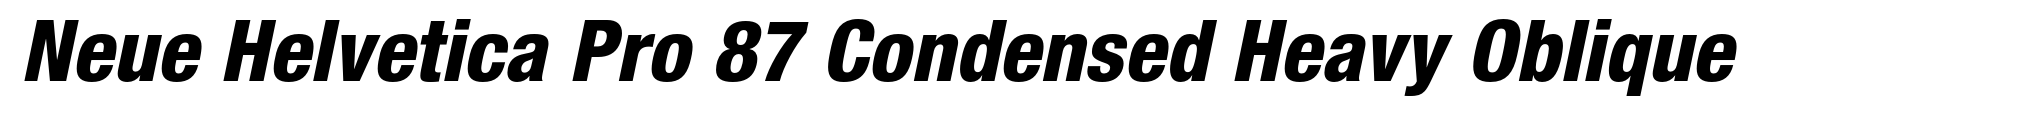 Neue Helvetica Pro 87 Condensed Heavy Oblique image